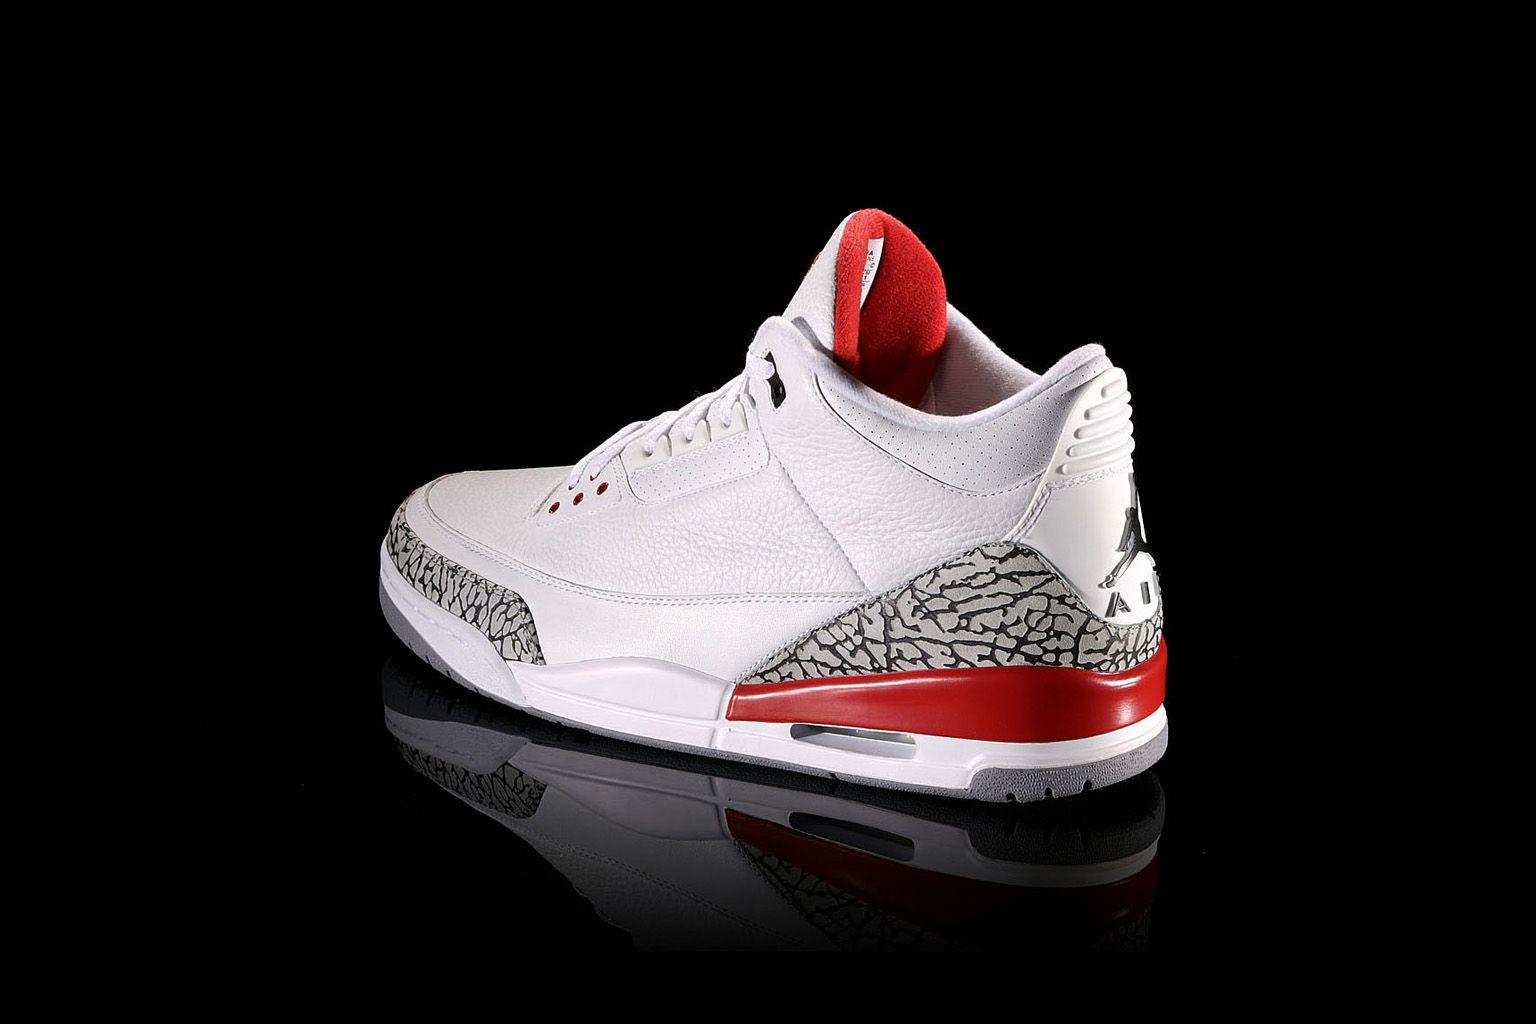 Jordan Shoes 30674 1536x1024 px